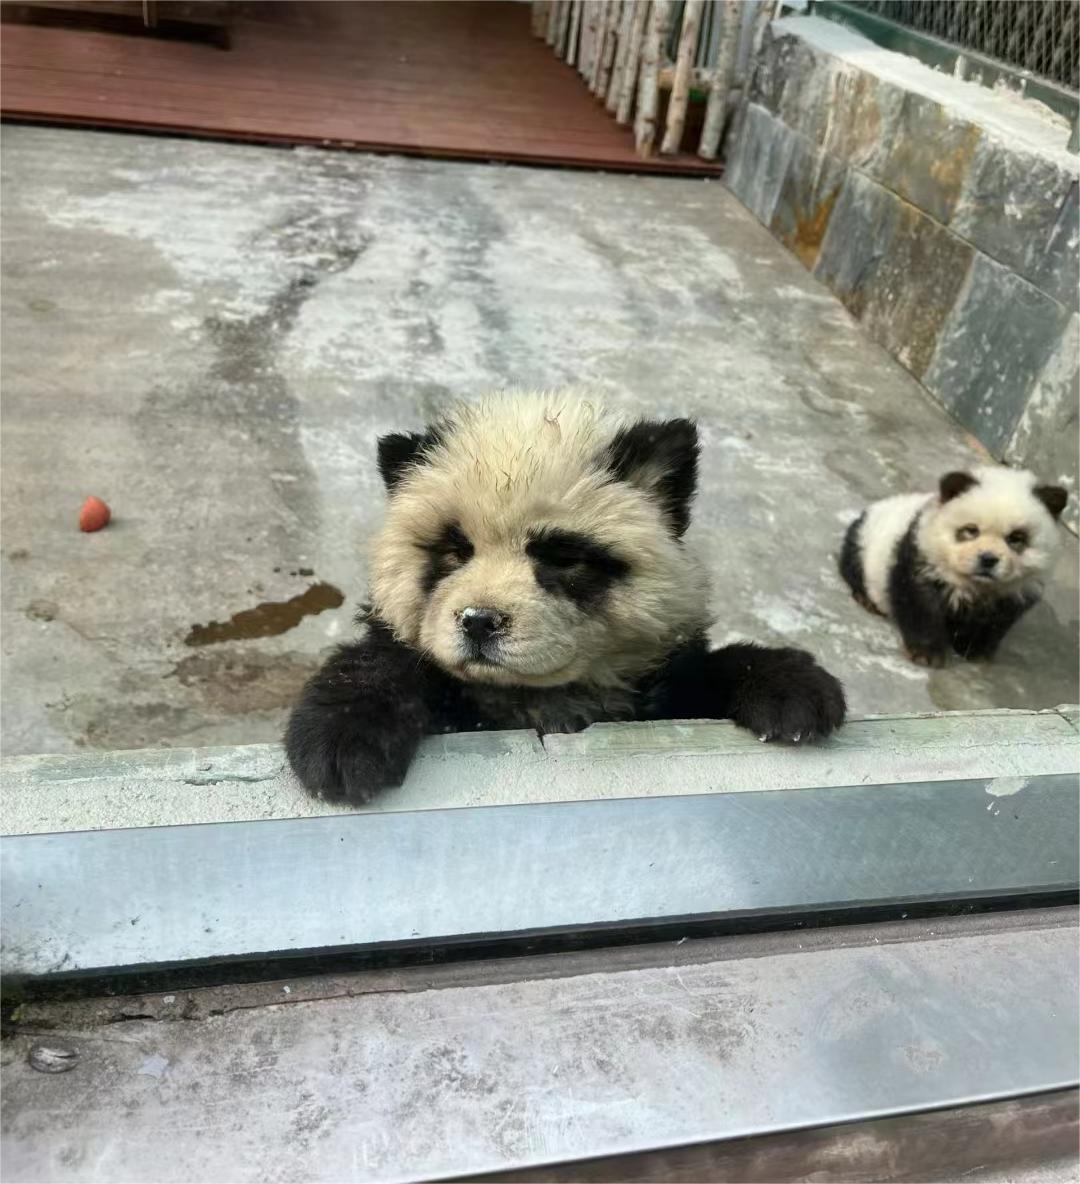 泰州动物园熊猫犬引争议 回应:特地引进 引进时已染色